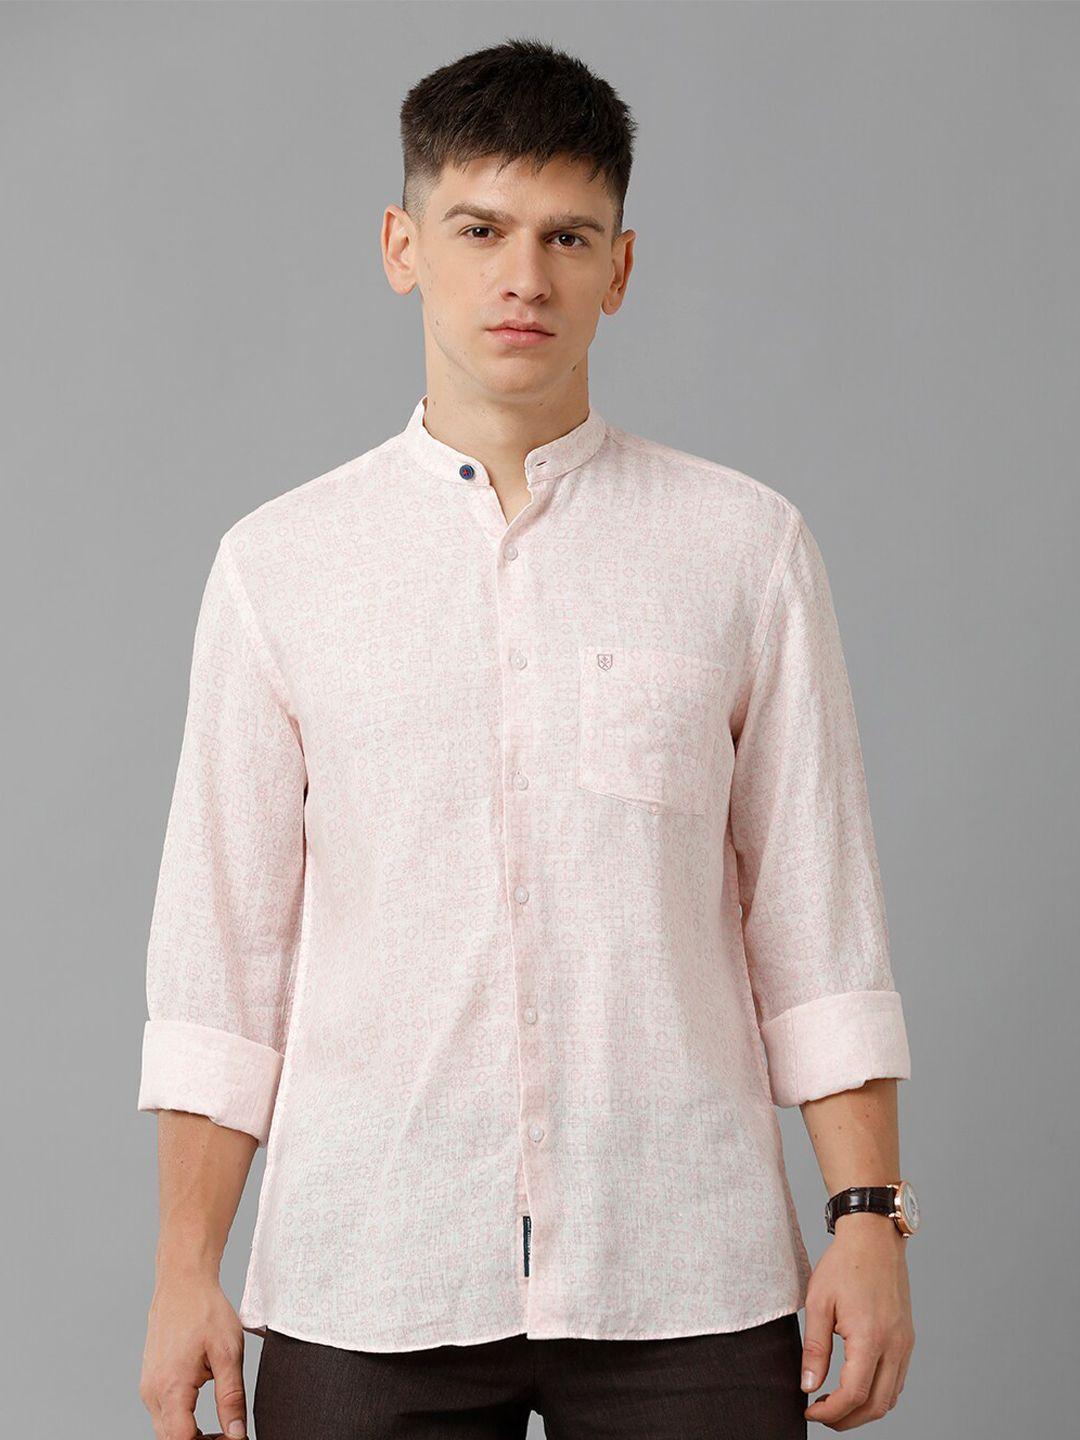 linen-club-printed-spread-collar-linen-casual-shirt